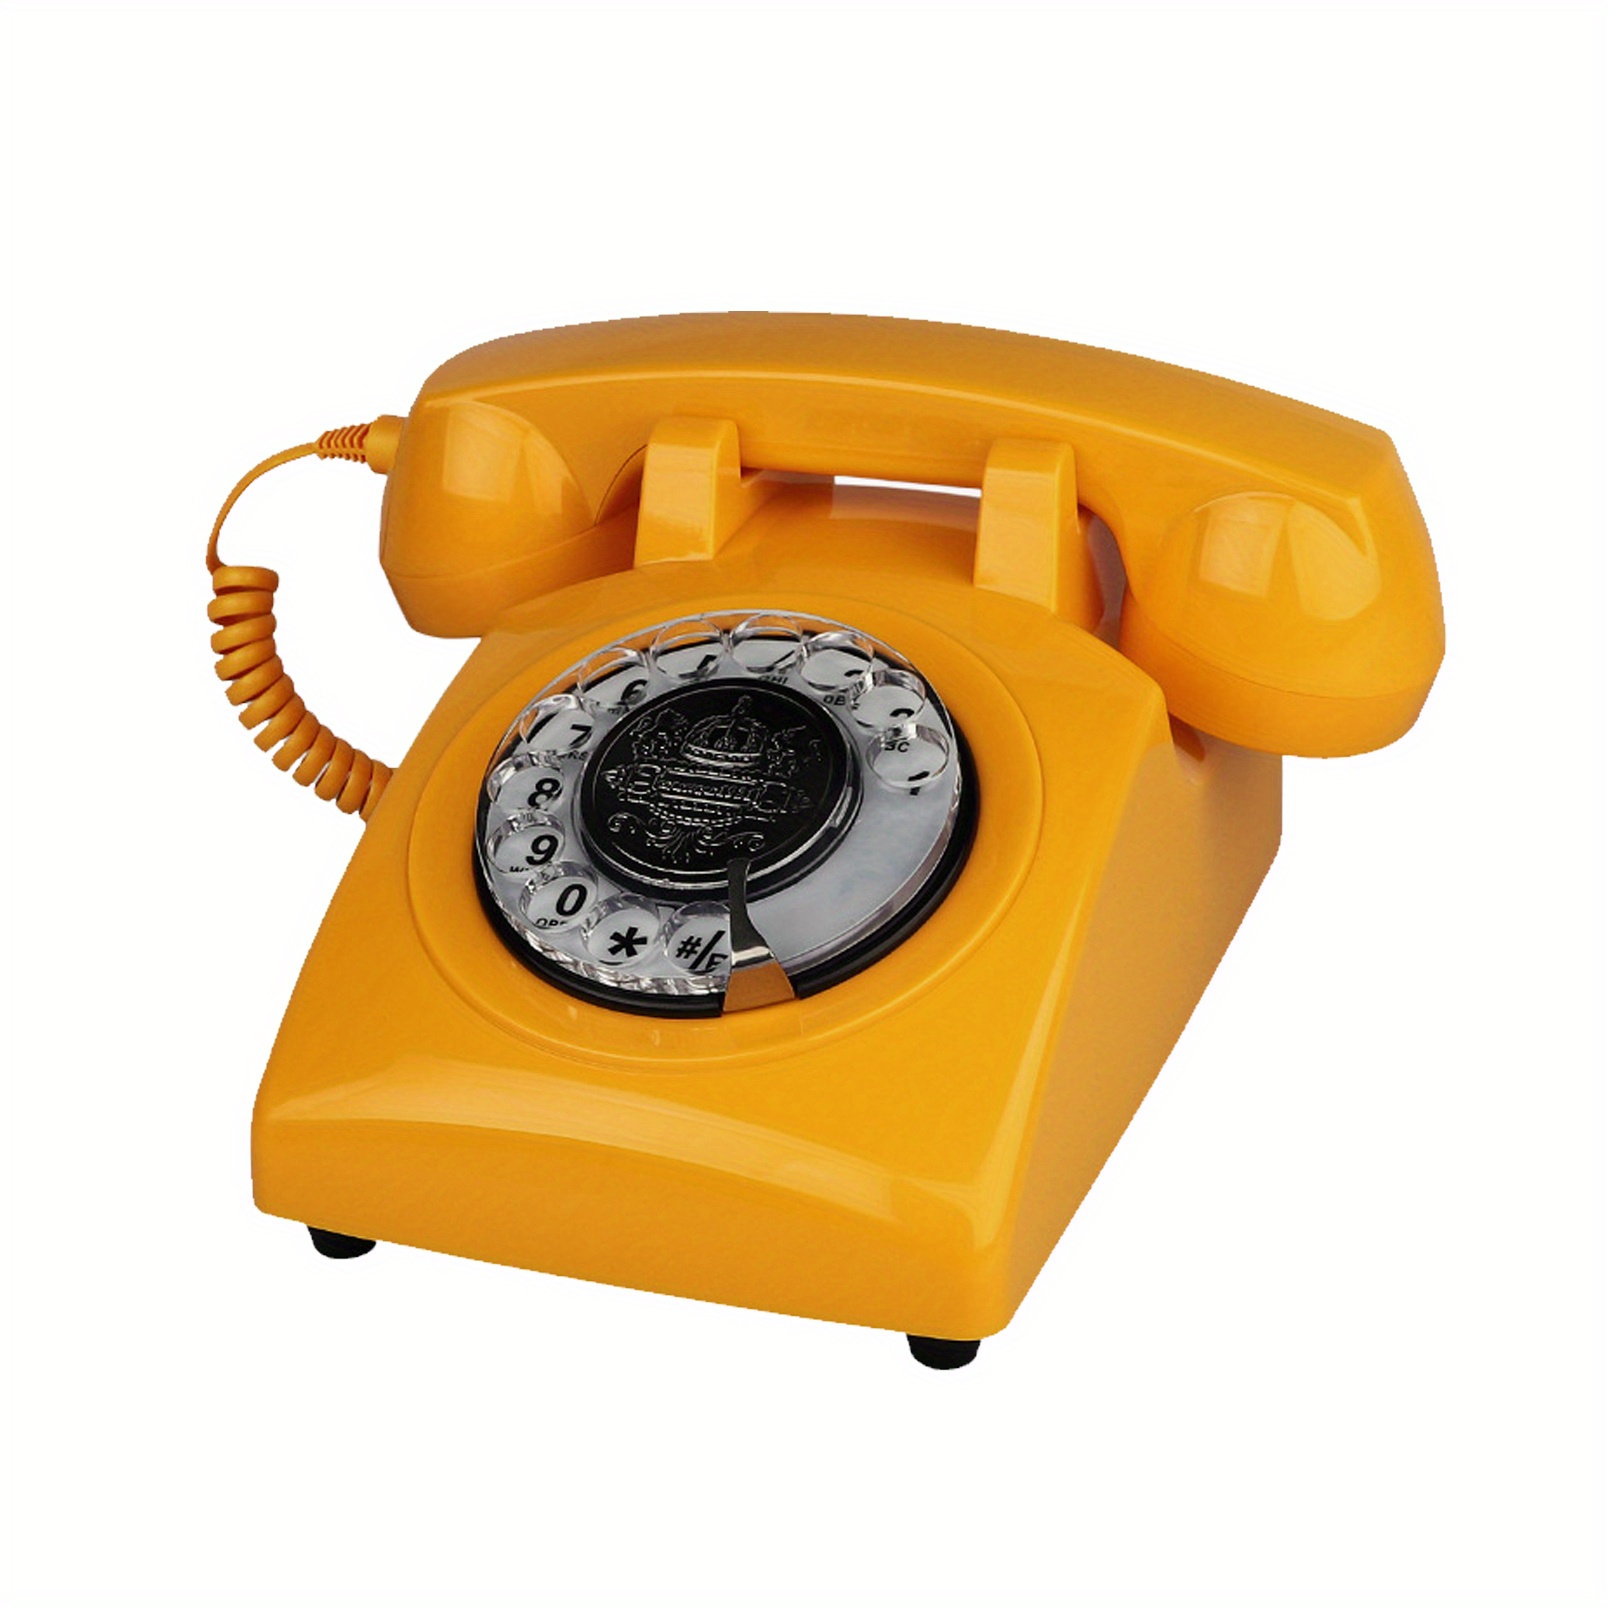 Teléfono vintage, teléfono rotativo retro, teléfono fijo, teléfono ant -  VIRTUAL MUEBLES